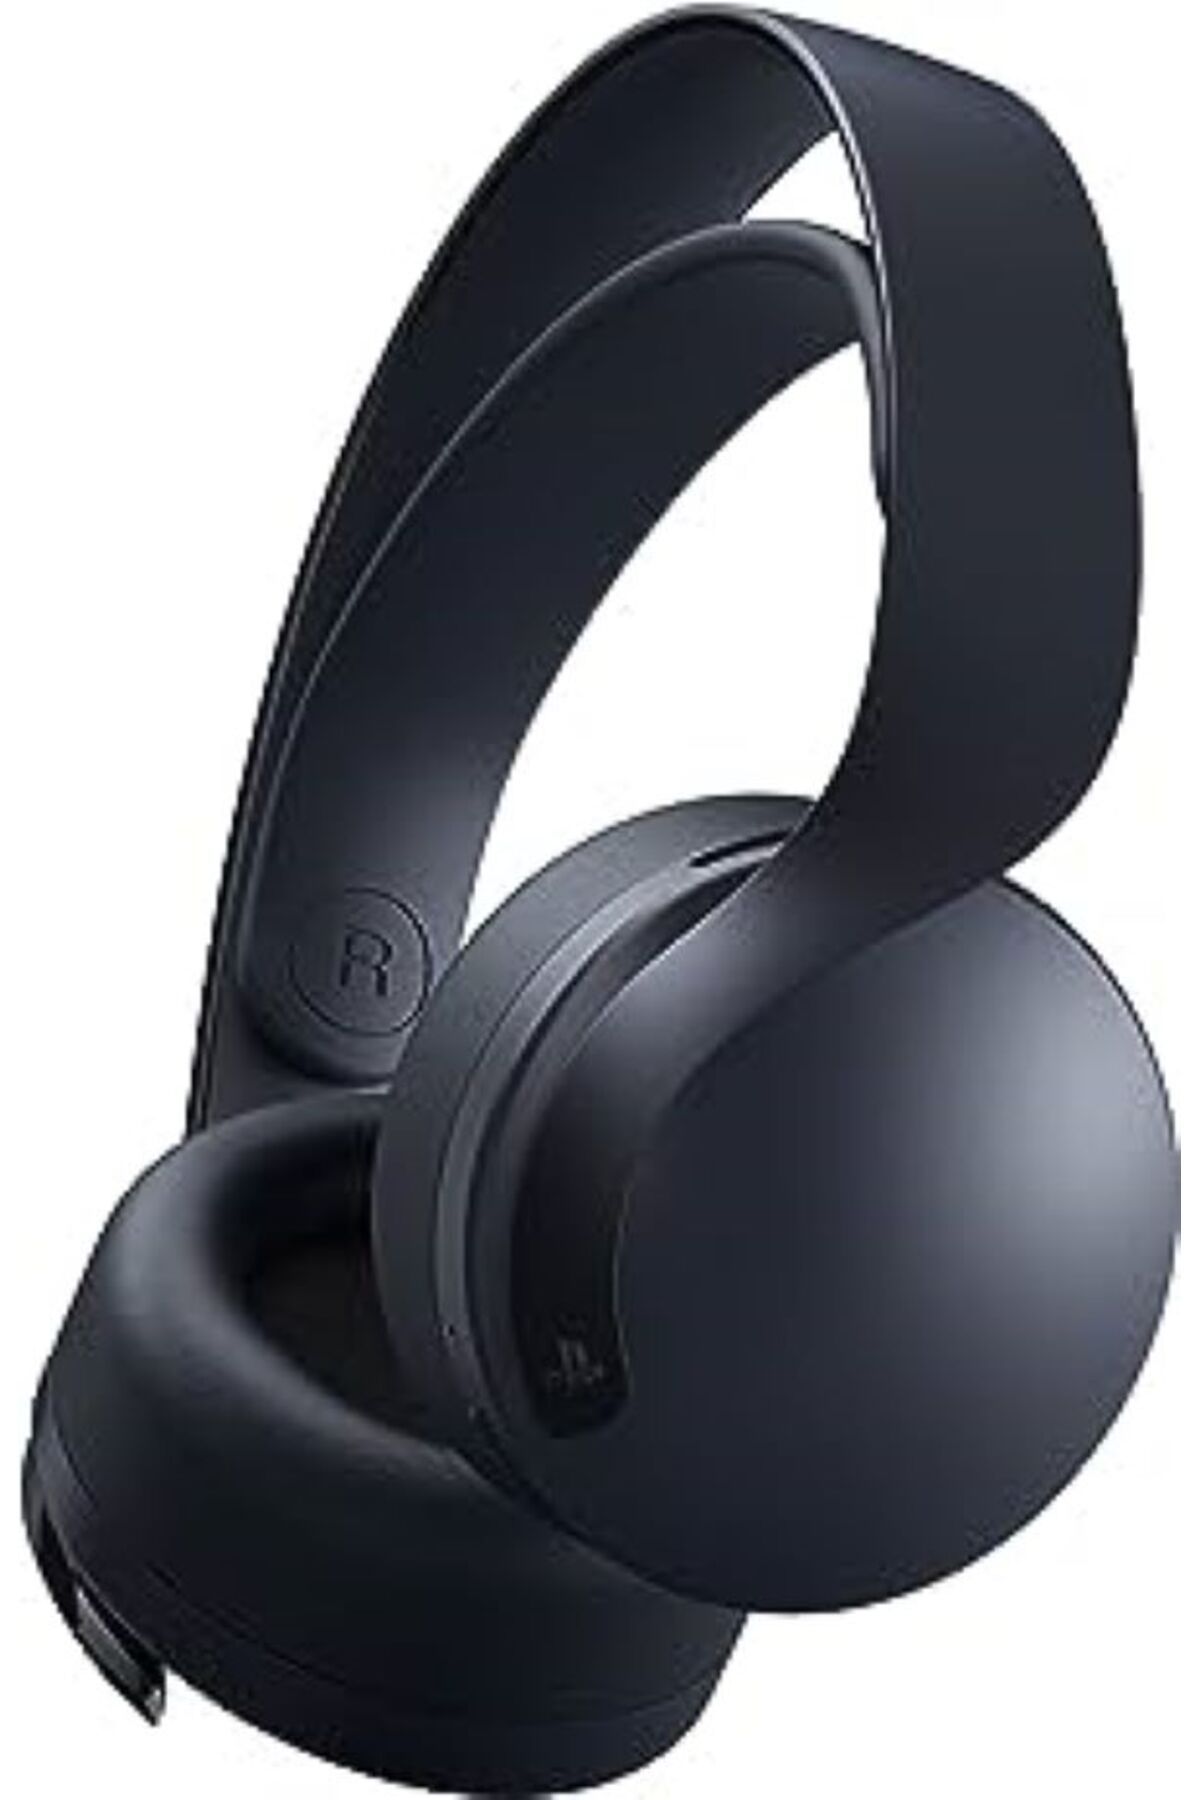 Sony PS5 Pulse 3D Kablosuz Mikrofonlu Kulak Üstü Oyuncu Kulaklığı Siyah